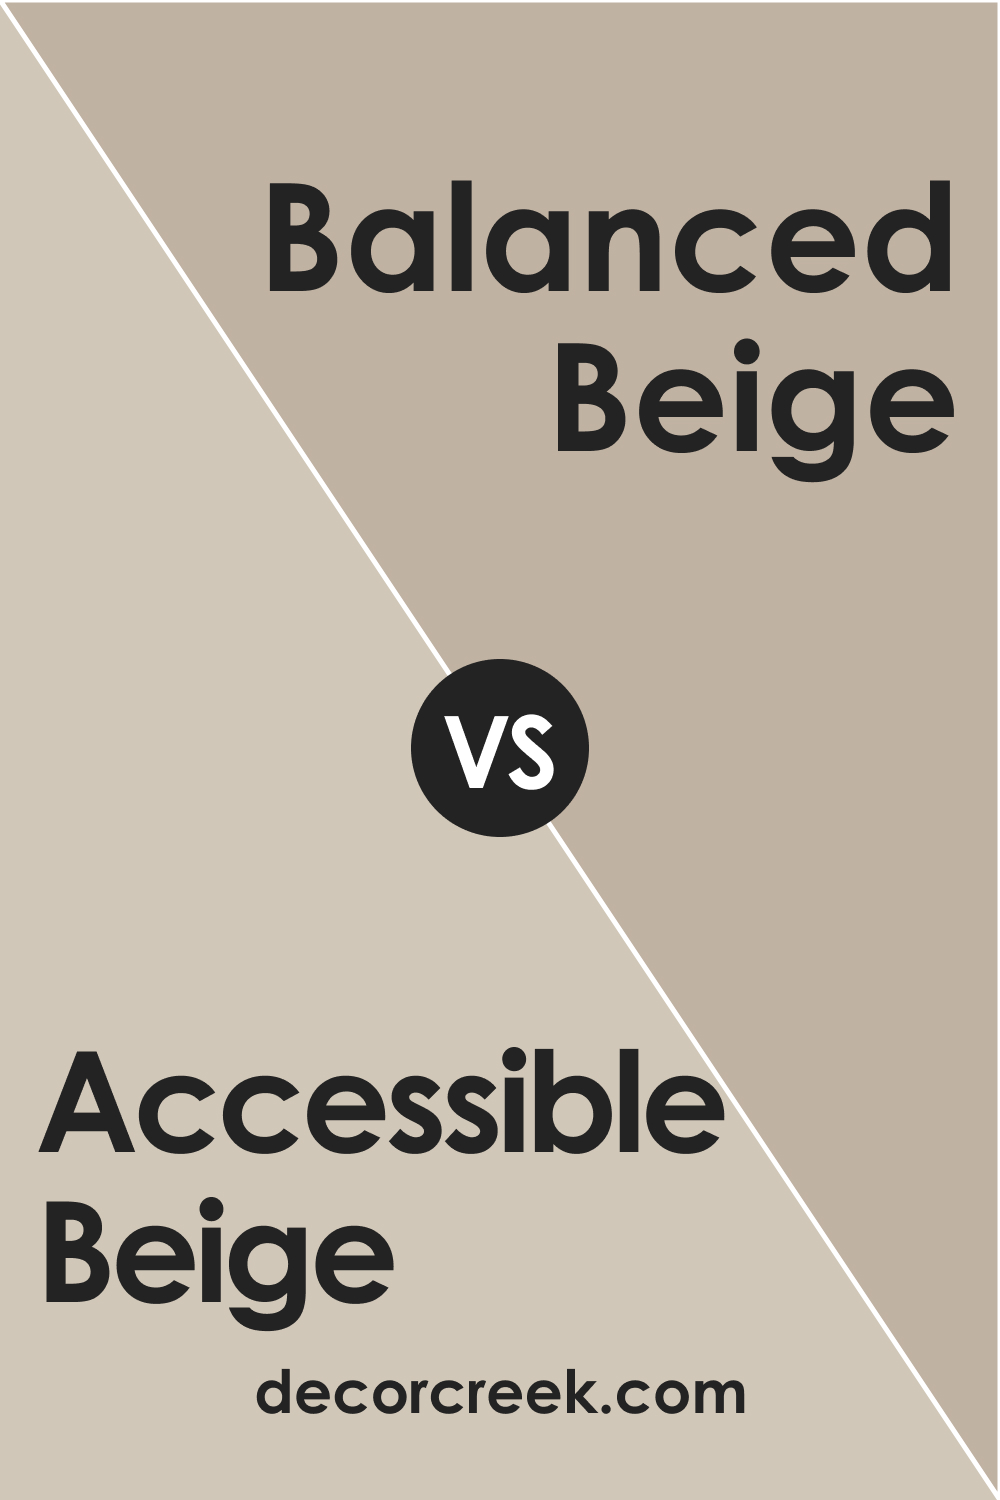 Accessible Beige SW 7036 vs. SW 7037 Balanced Beige